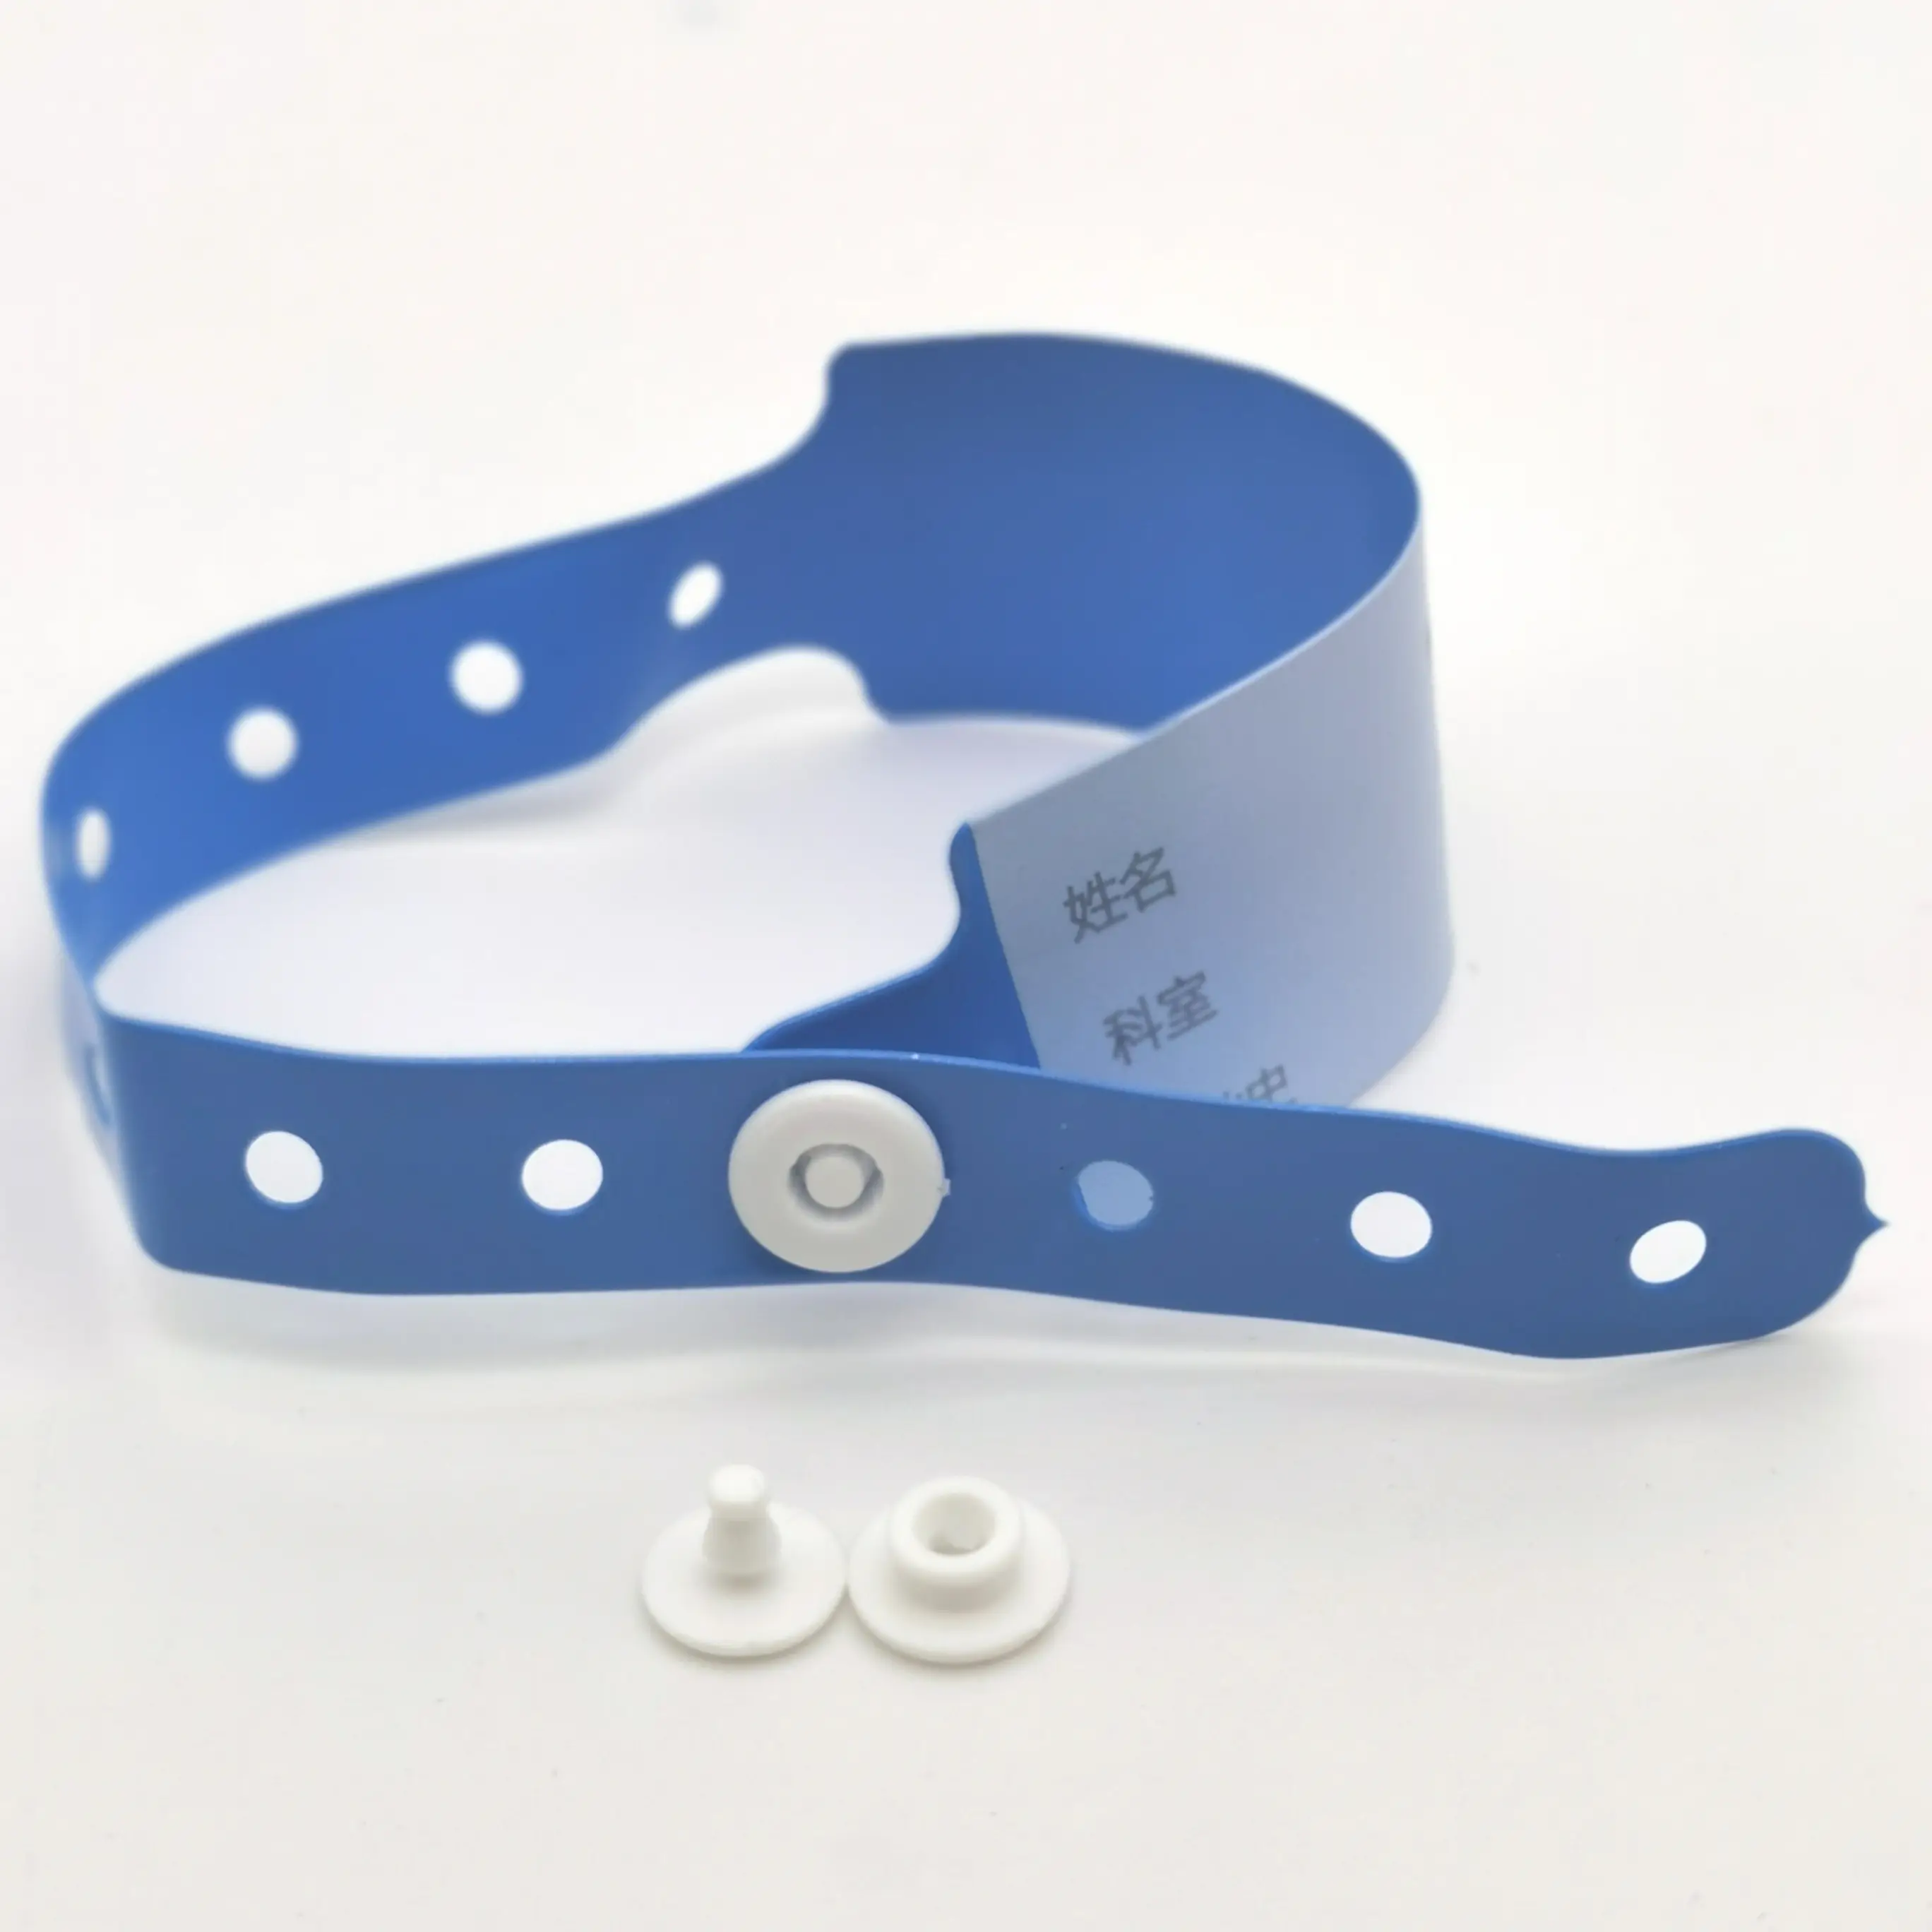 Gelang Tangan ID Rumah Sakit PVC Medis Plastik Super Lembut dengan Tombol Jepret untuk Bayi Baru Lahir